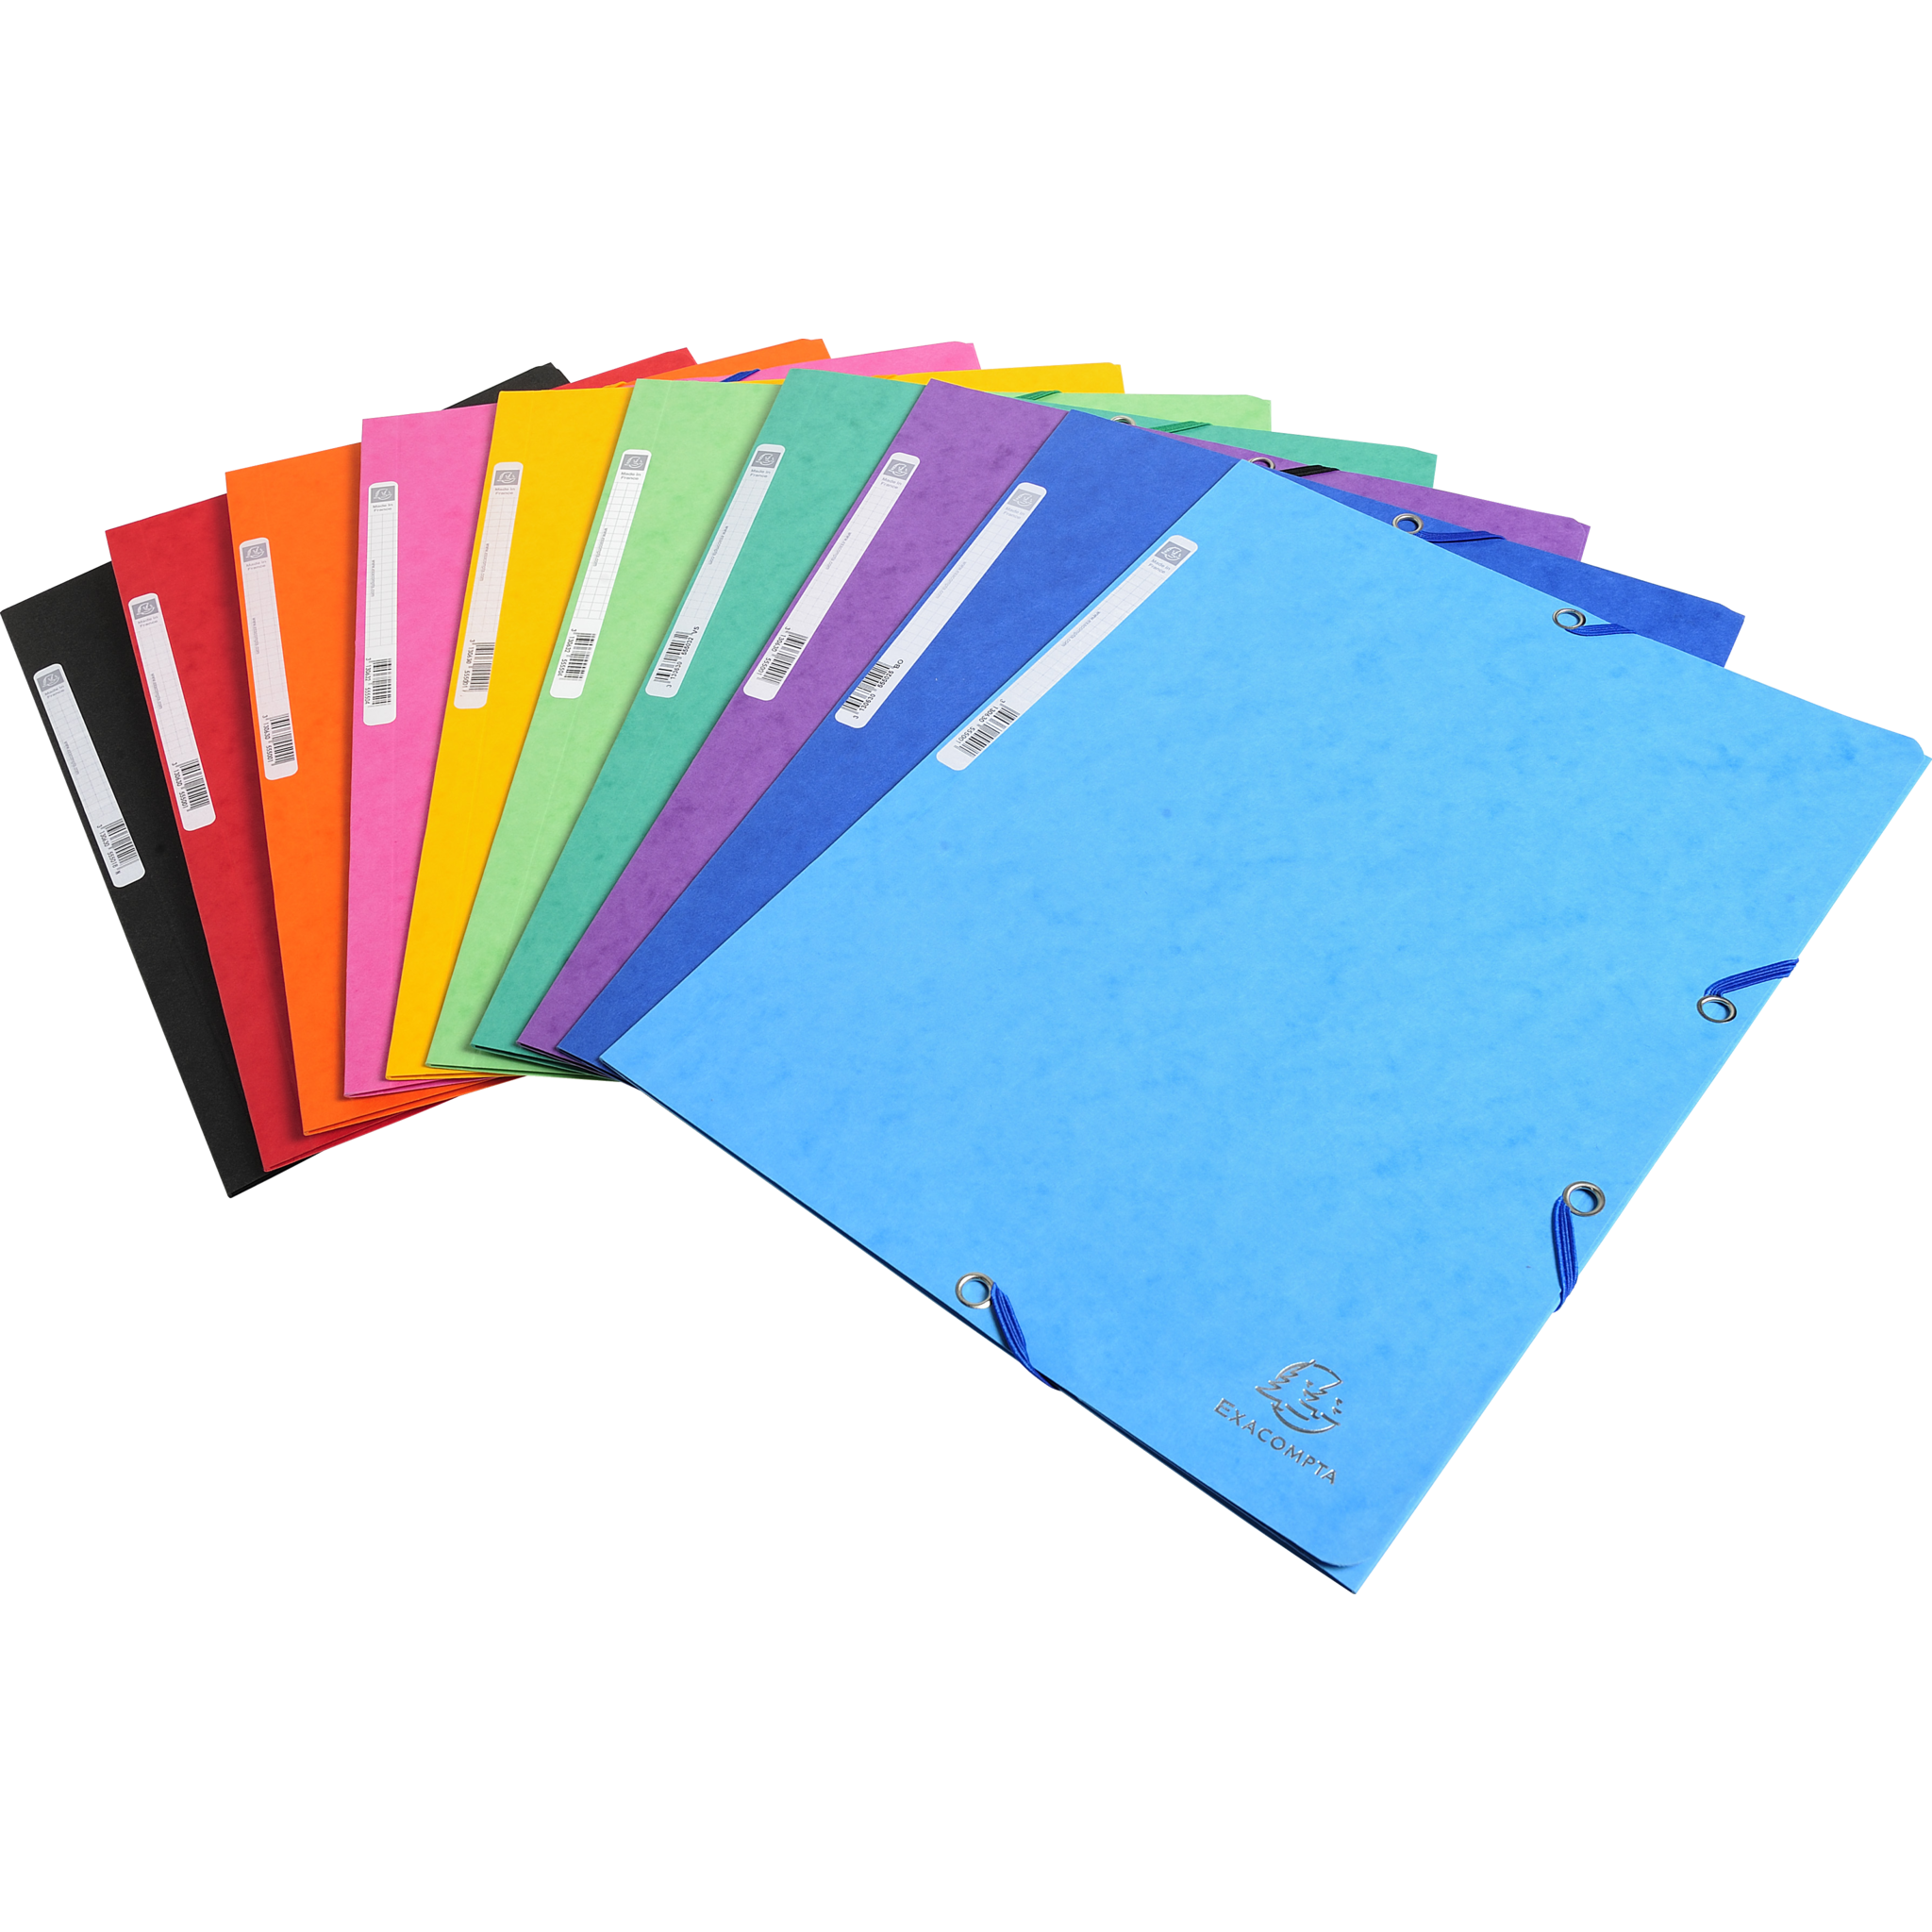 EXACOMPTA Sammelmappe mit Gummizug, 3 Klappen und Etikett aus Colorspan-Karton 400g für Format DIN A4 - Farben sortiert